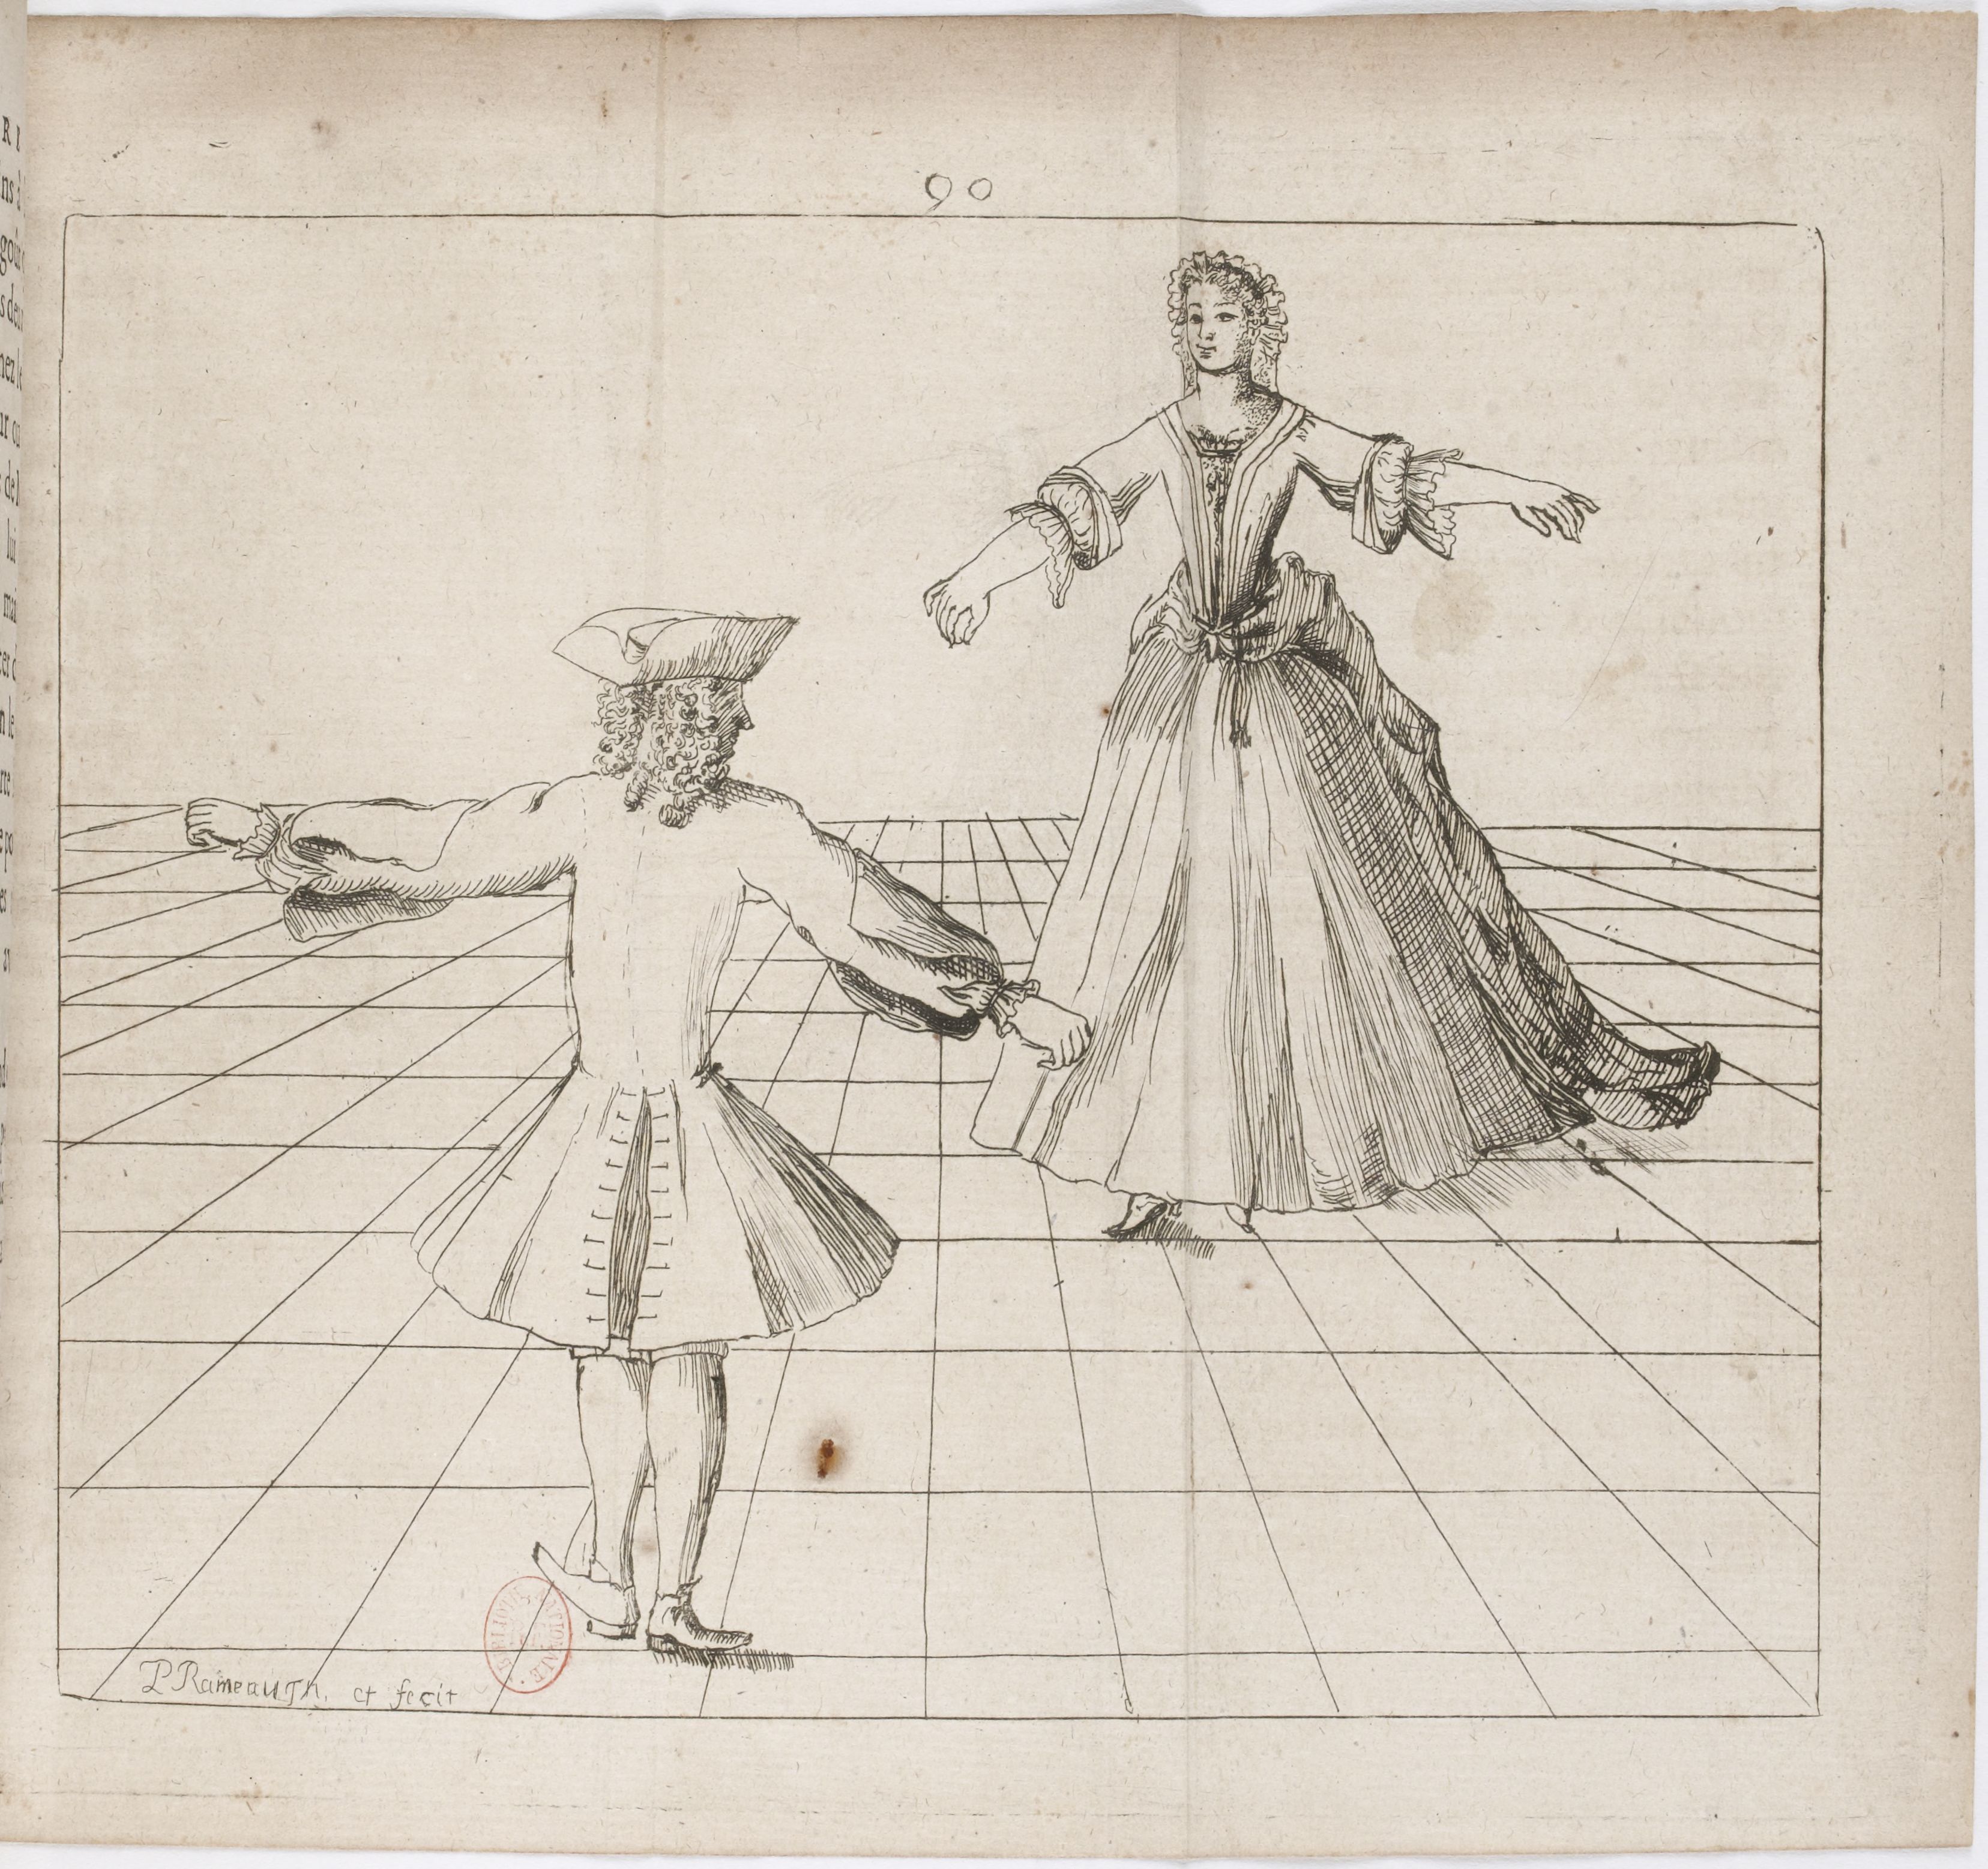 Вважається, що першим   хореографом   , Почали створювати термінологію балету, був   П'єр Бошан   , Вчитель танців французького короля   Людовика XIV